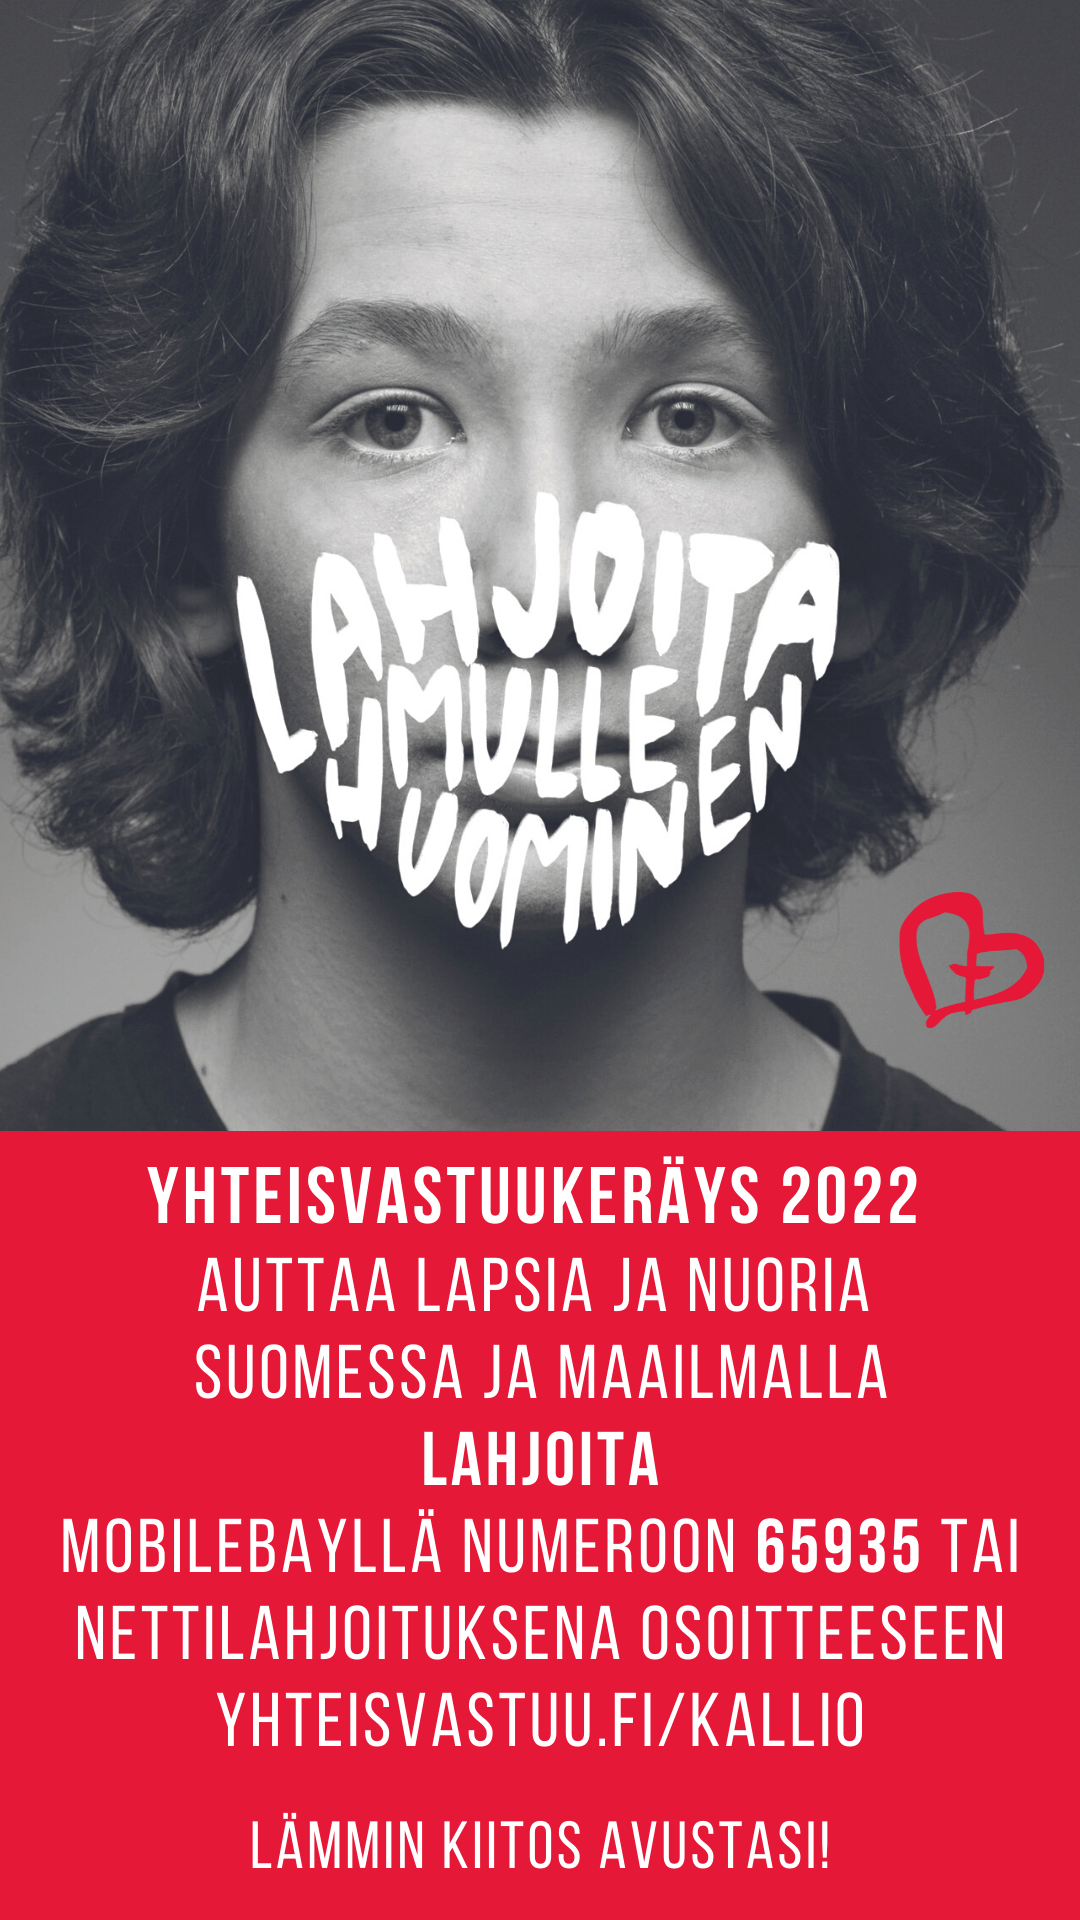 YHTEISVASTUUKERÄYS 2022 AUTTAA LAPSIA JA NUORIA